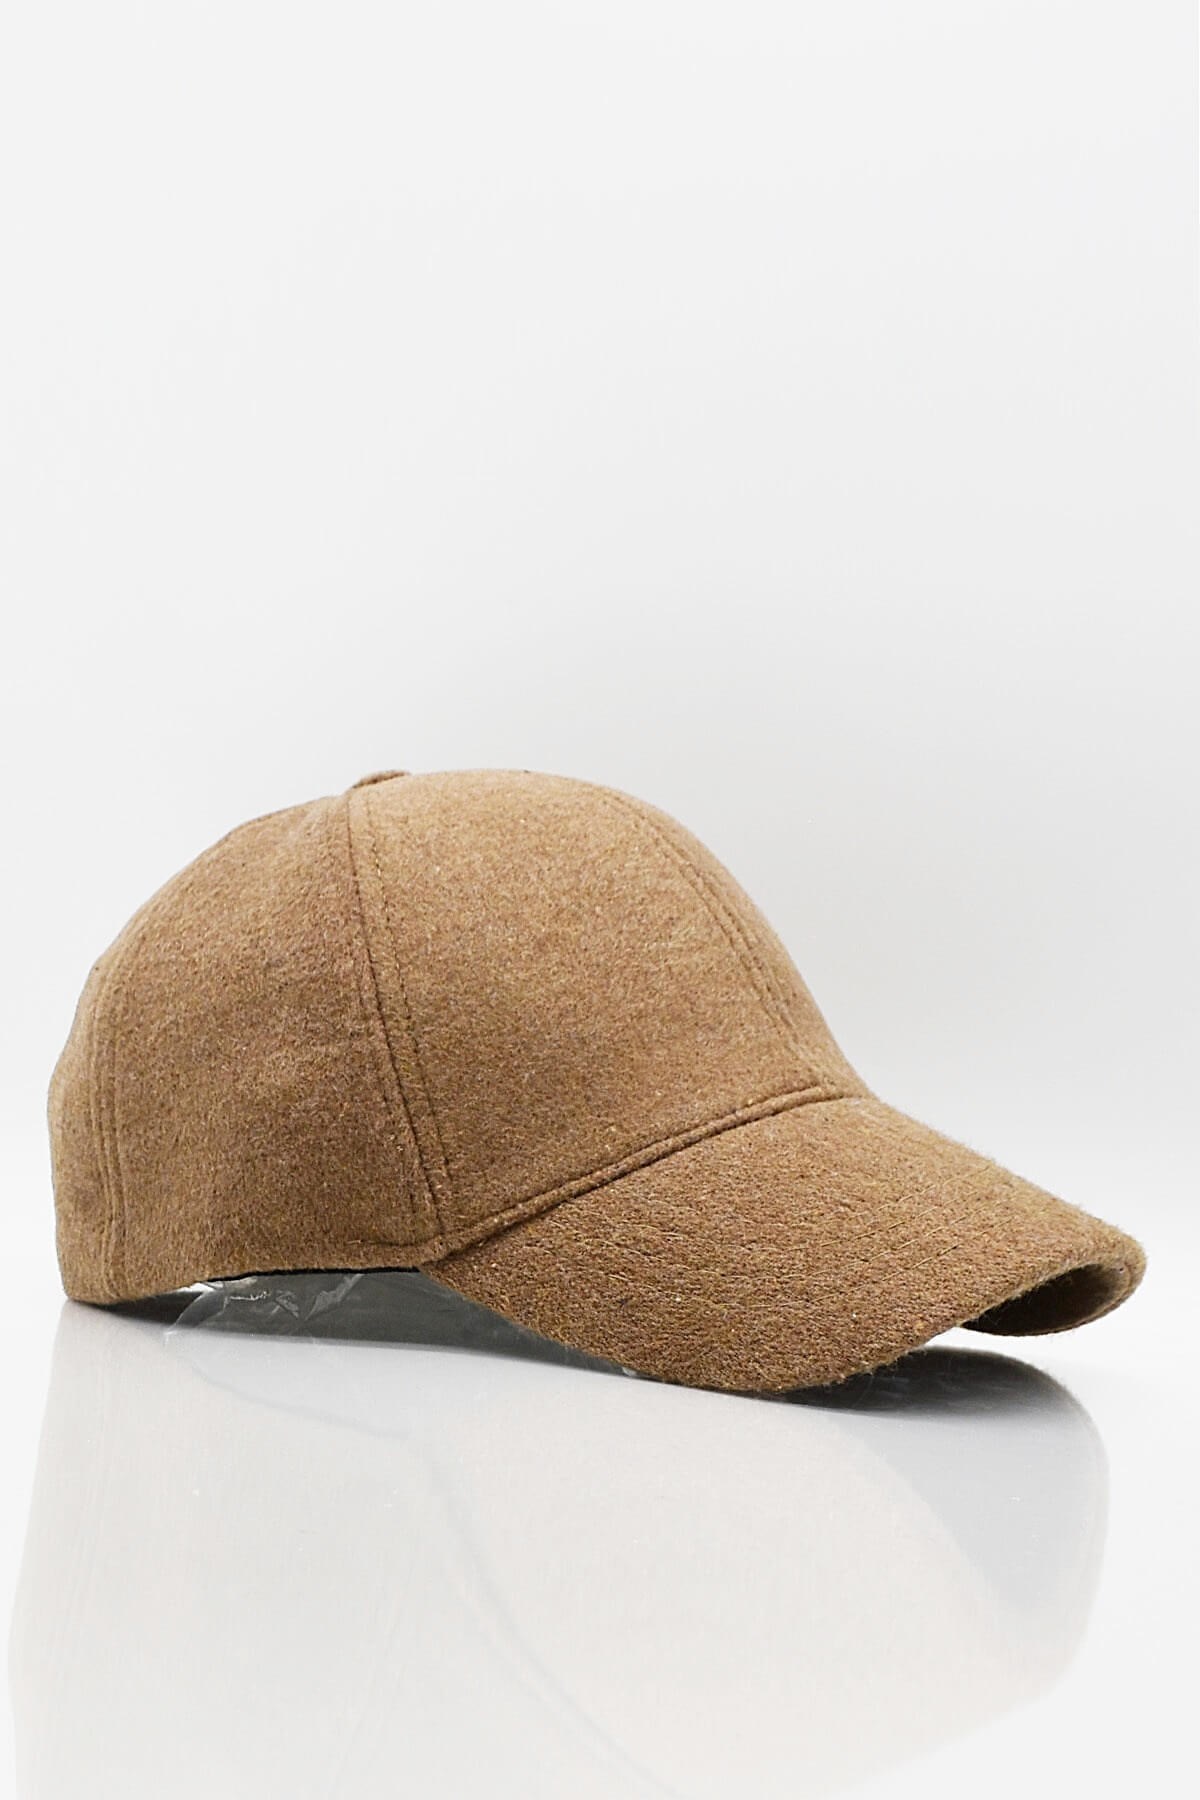 Külah Erkek Beyzbol Şapkası Yün Kışlık Kep-Camel KLH6875